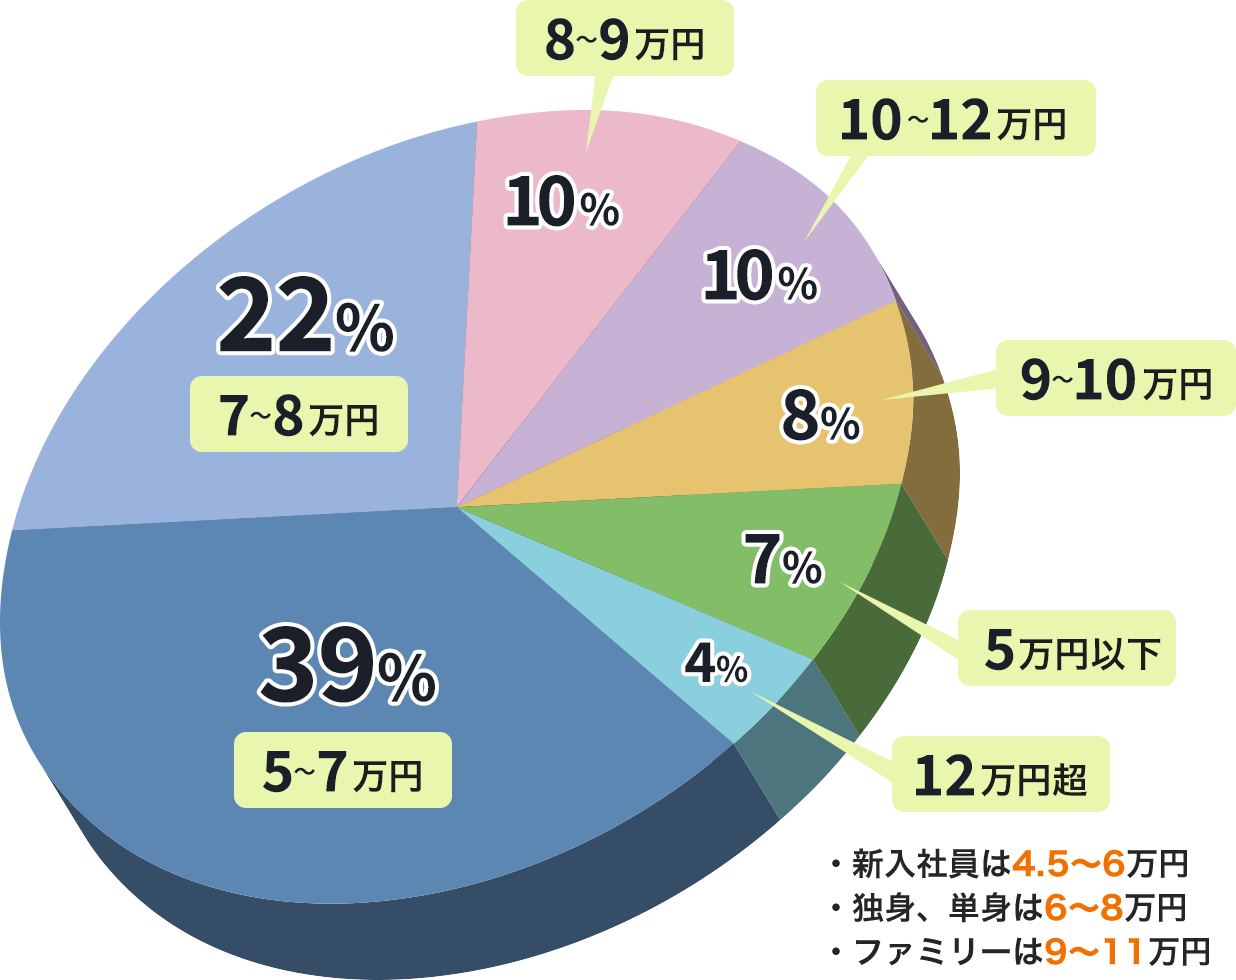 仙台市の世代別賃料統計を基に社宅をご提案